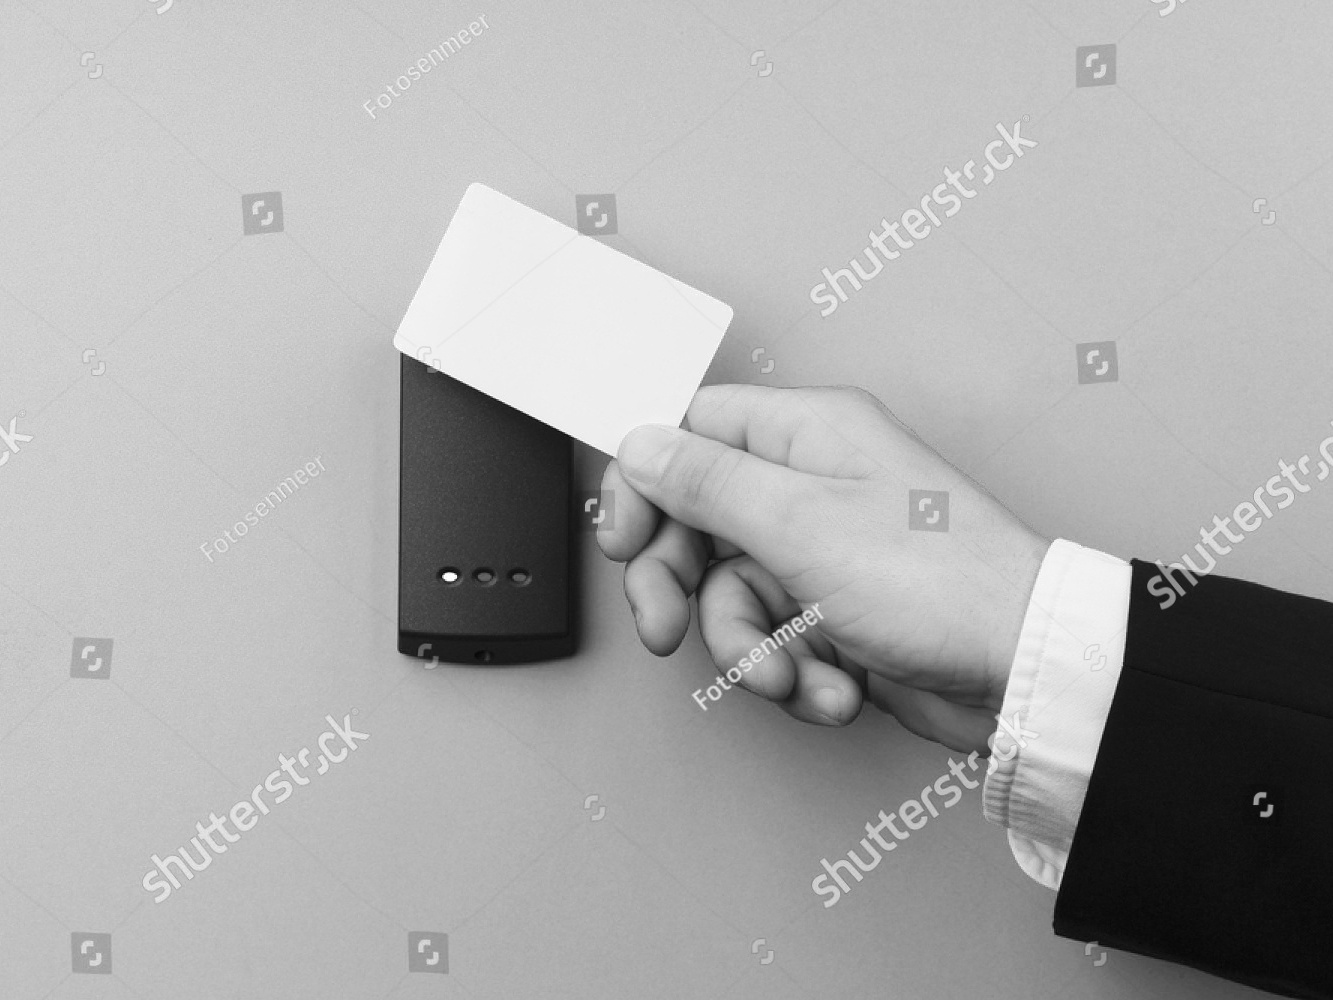 Eine NFC-Karte wird vor einen kontaktlosen Leser gehalten